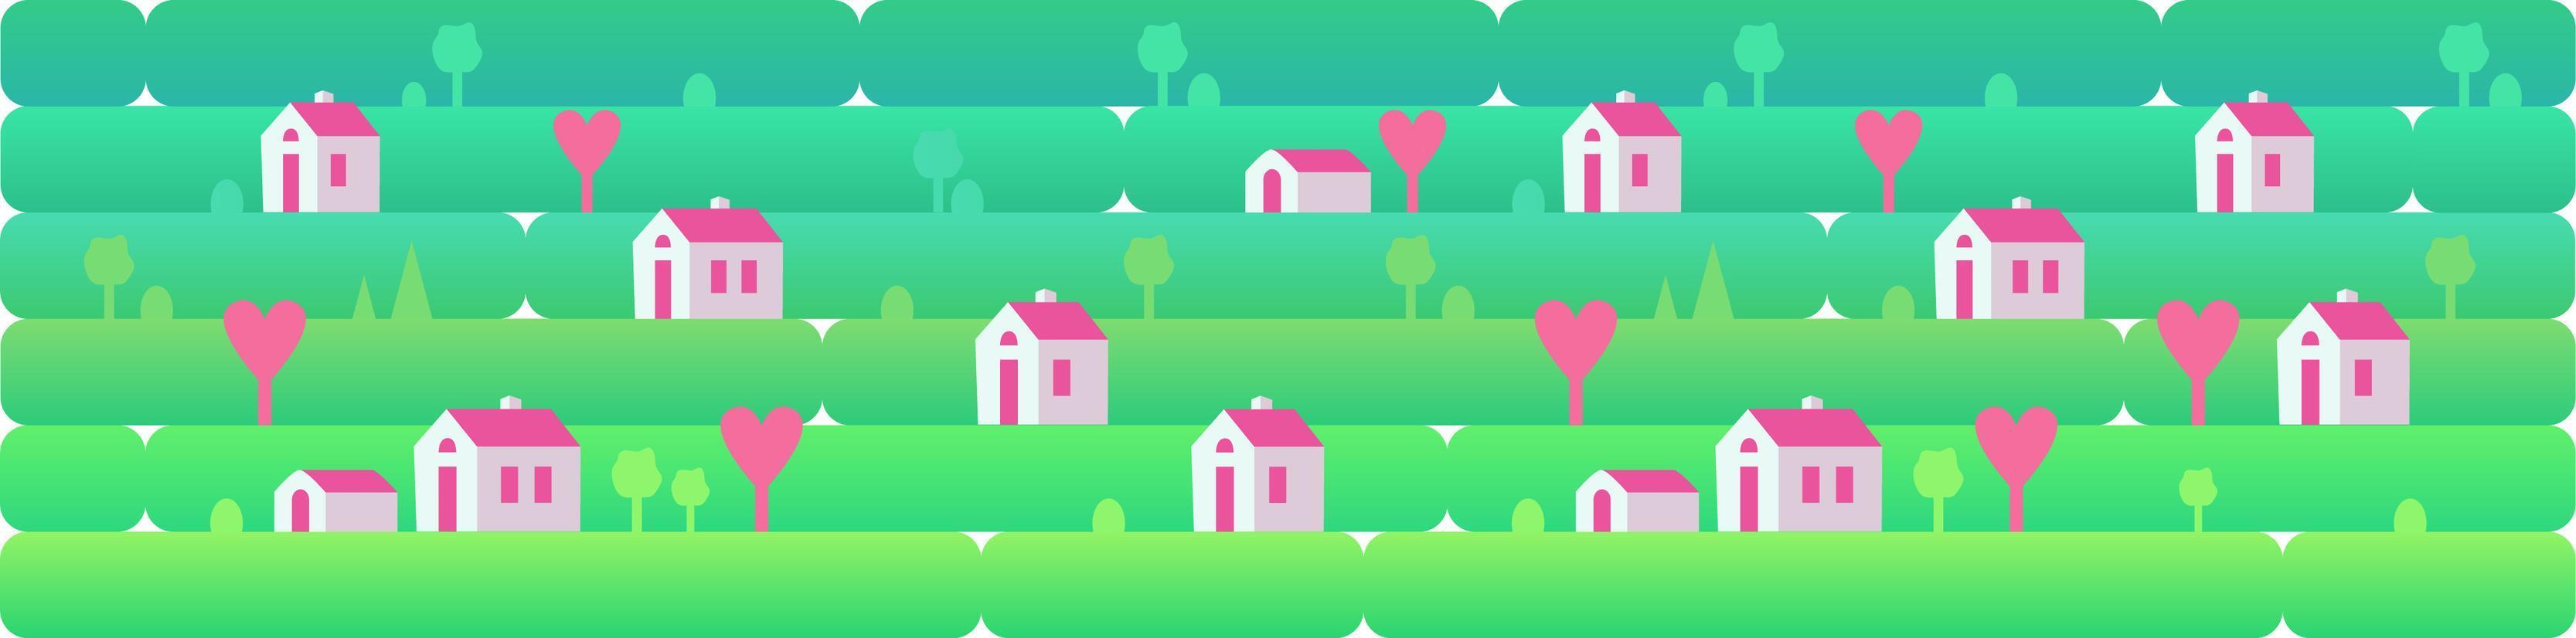 bannière un paysage de jour avec de petites maisons et des coeurs roses, sur fond d'herbe, de nature, de collines. illustration vectorielle dans un style plat pour la conception, les jeux ou les sites Web vecteur